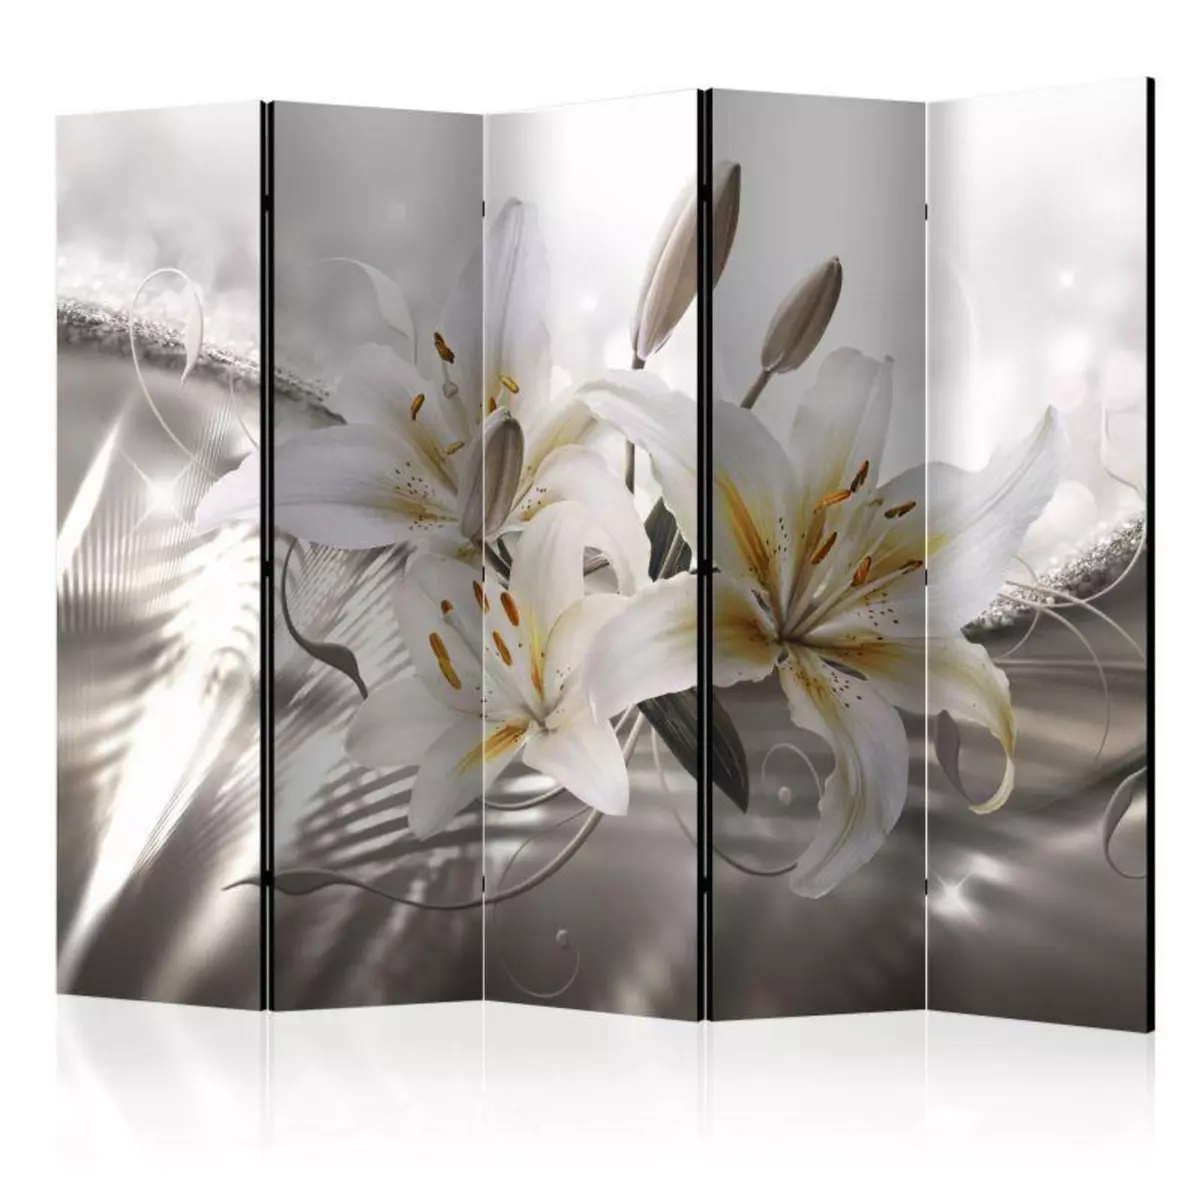 Paris Prix Paravent 5 Volets  Crystalline Beauty  172x225cm